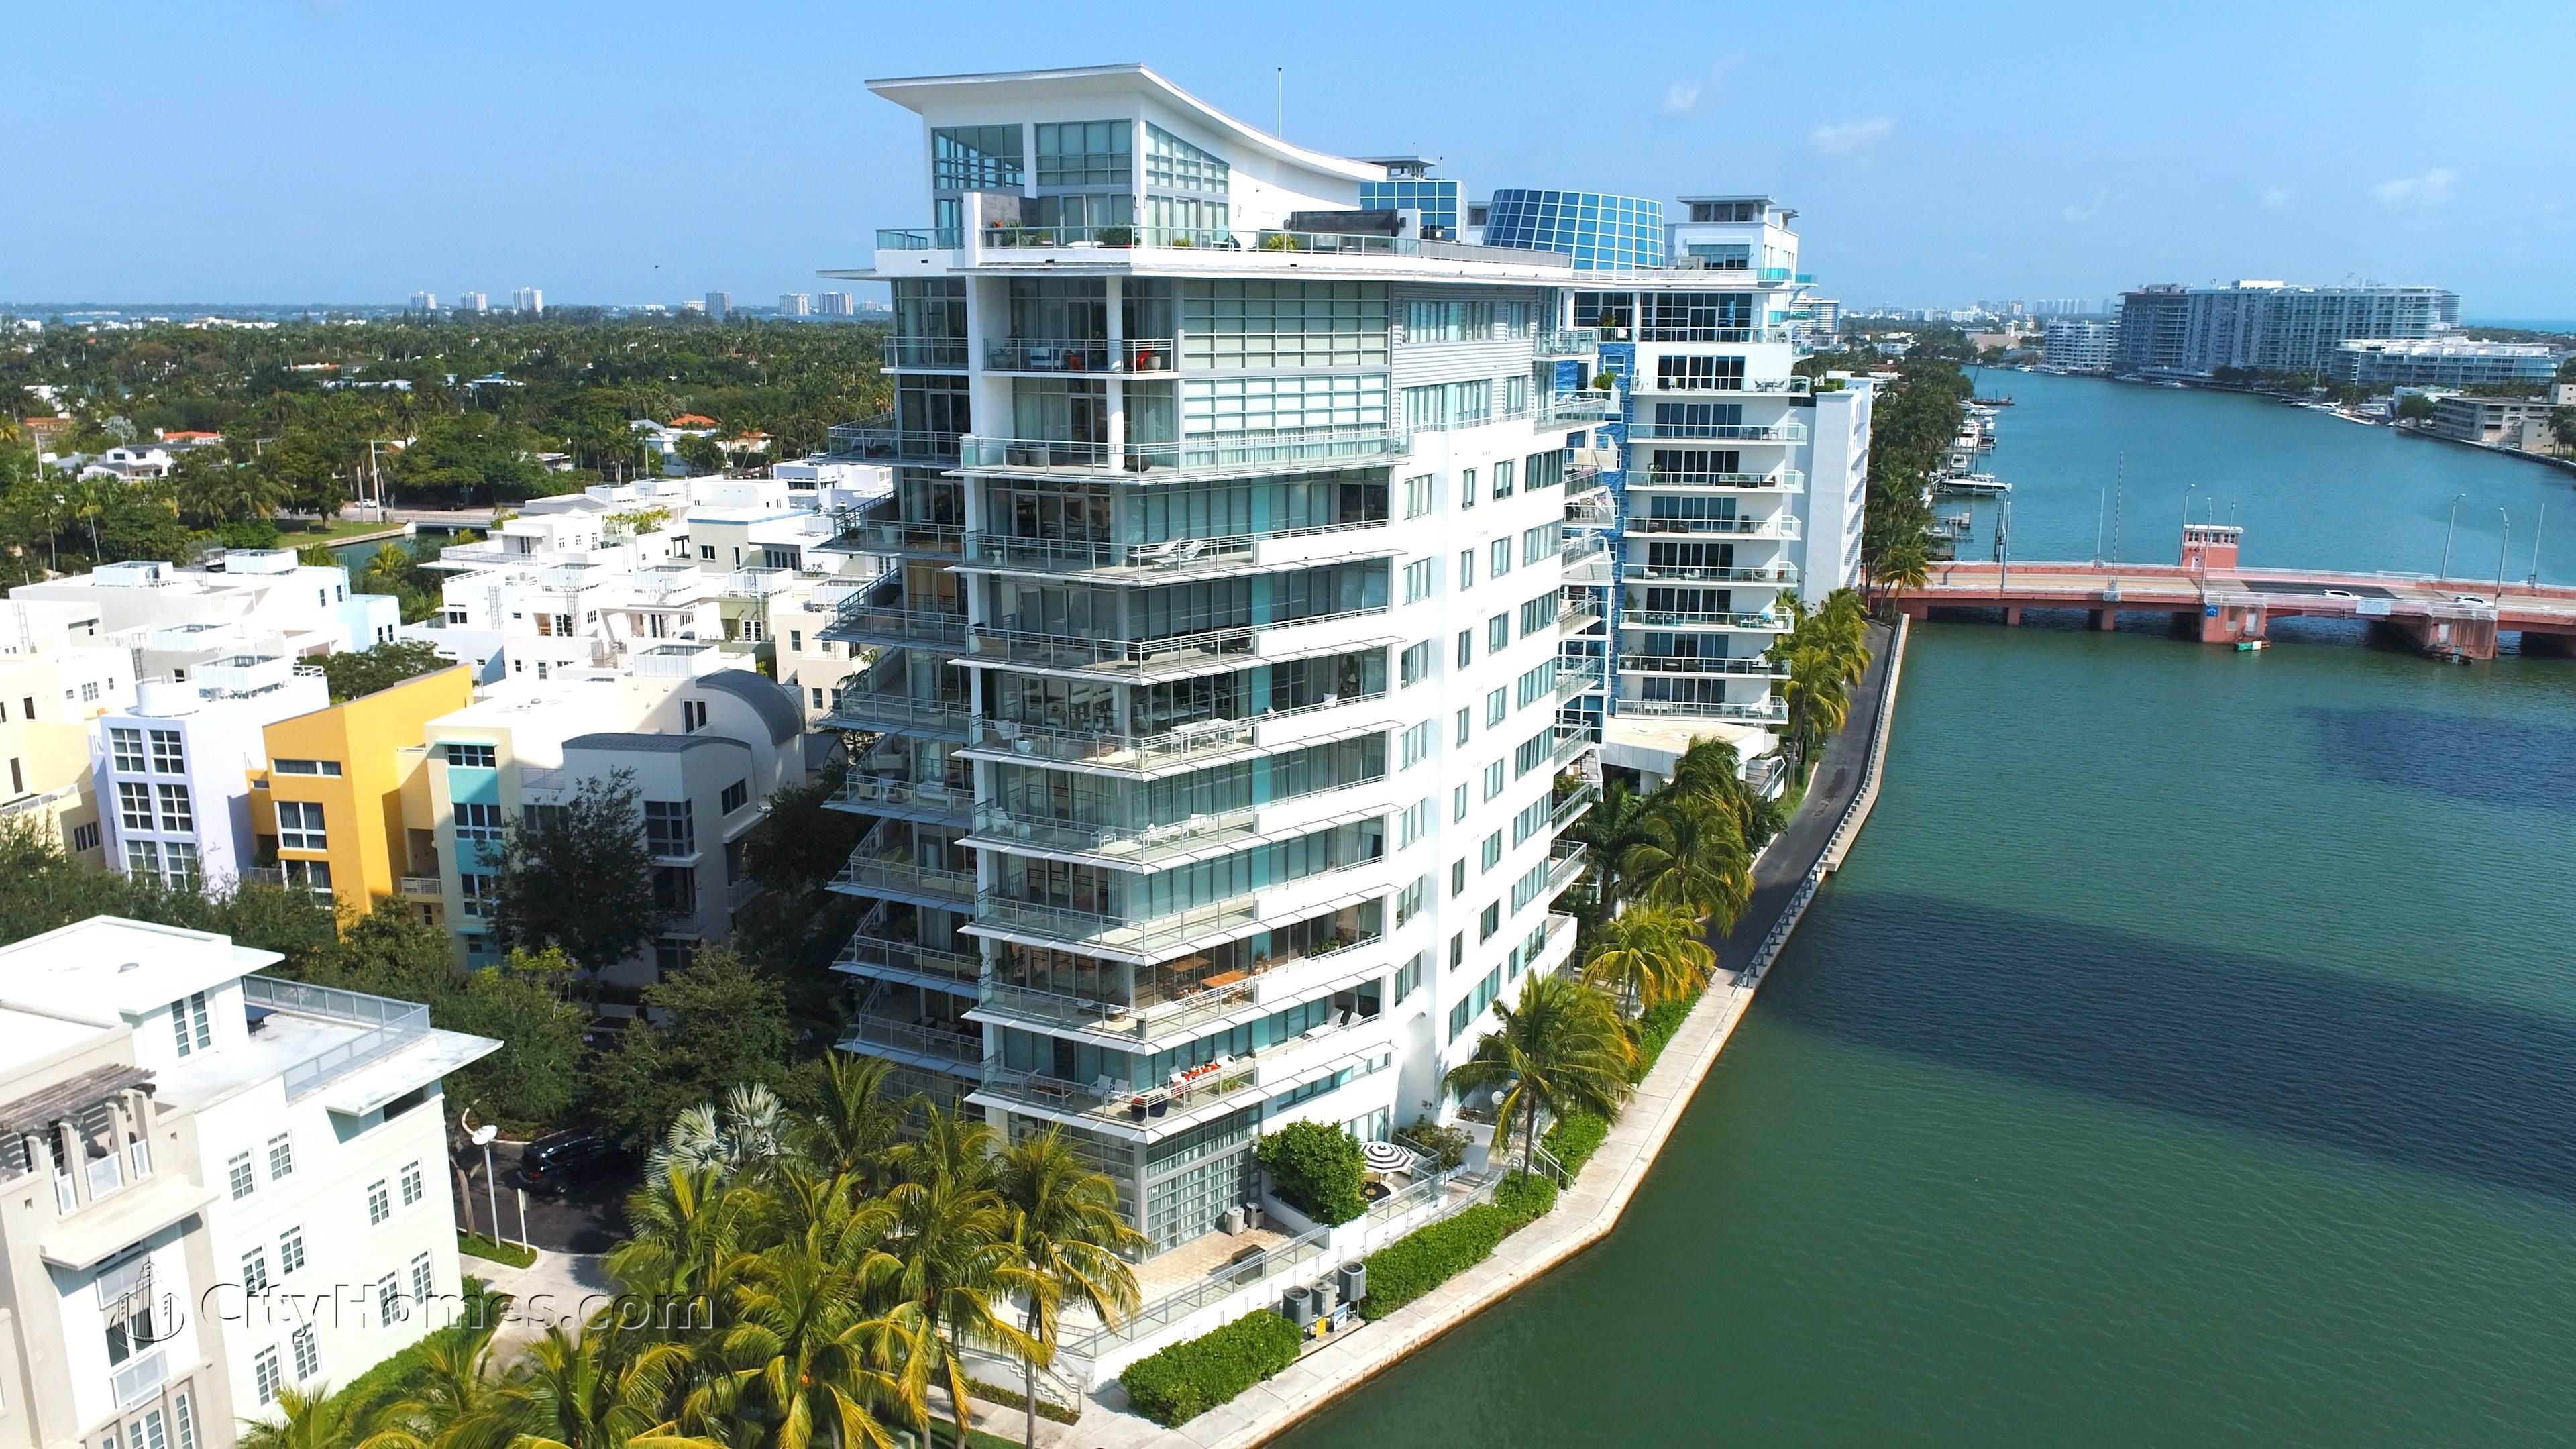 AQUA ALLISON ISLAND - GORLIN BUILDING edificio a 6101 Aqua Avenue, Miami Beach, FL 33141